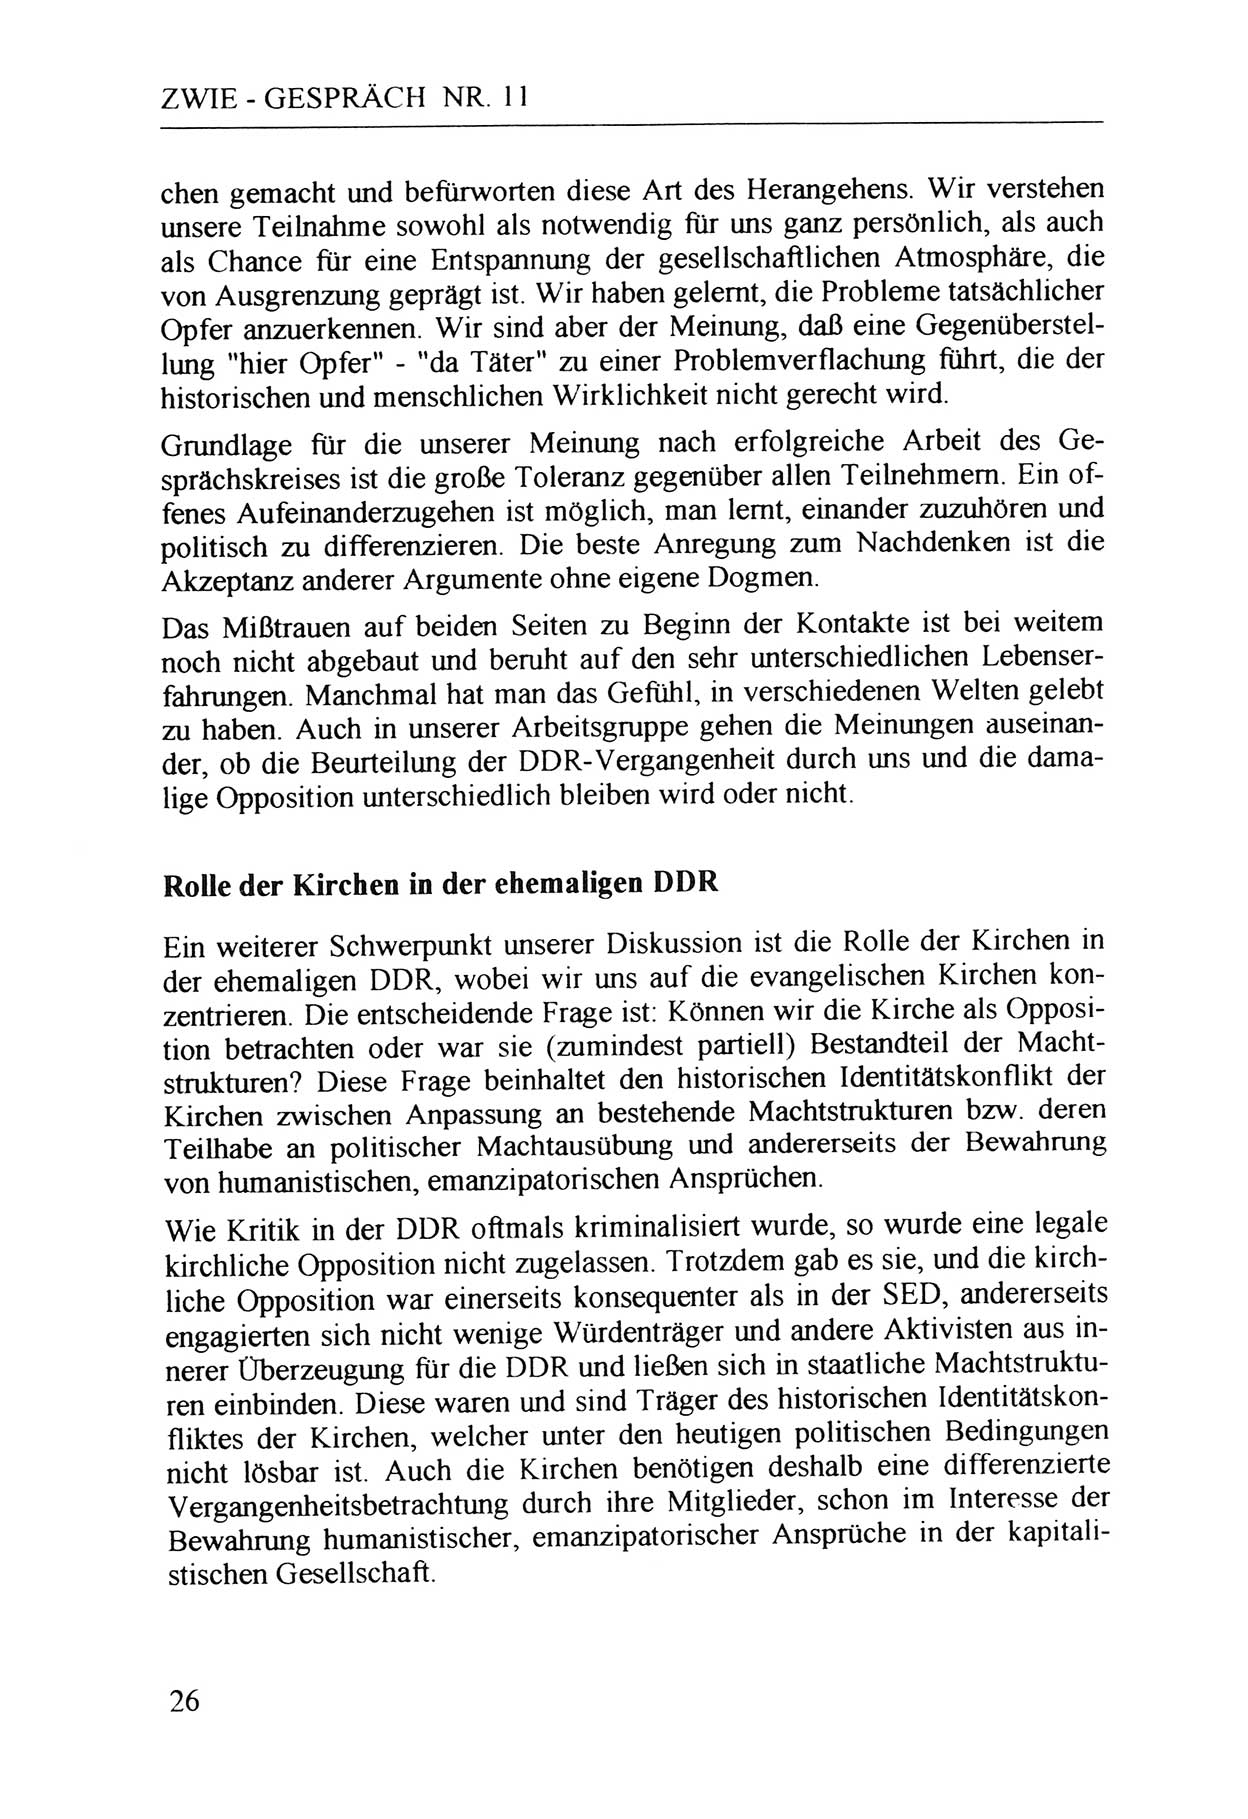 Zwie-Gespräch, Beiträge zur Aufarbeitung der Staatssicherheits-Vergangenheit [Deutsche Demokratische Republik (DDR)], Ausgabe Nr. 11, Berlin 1992, Seite 26 (Zwie-Gespr. Ausg. 11 1992, S. 26)